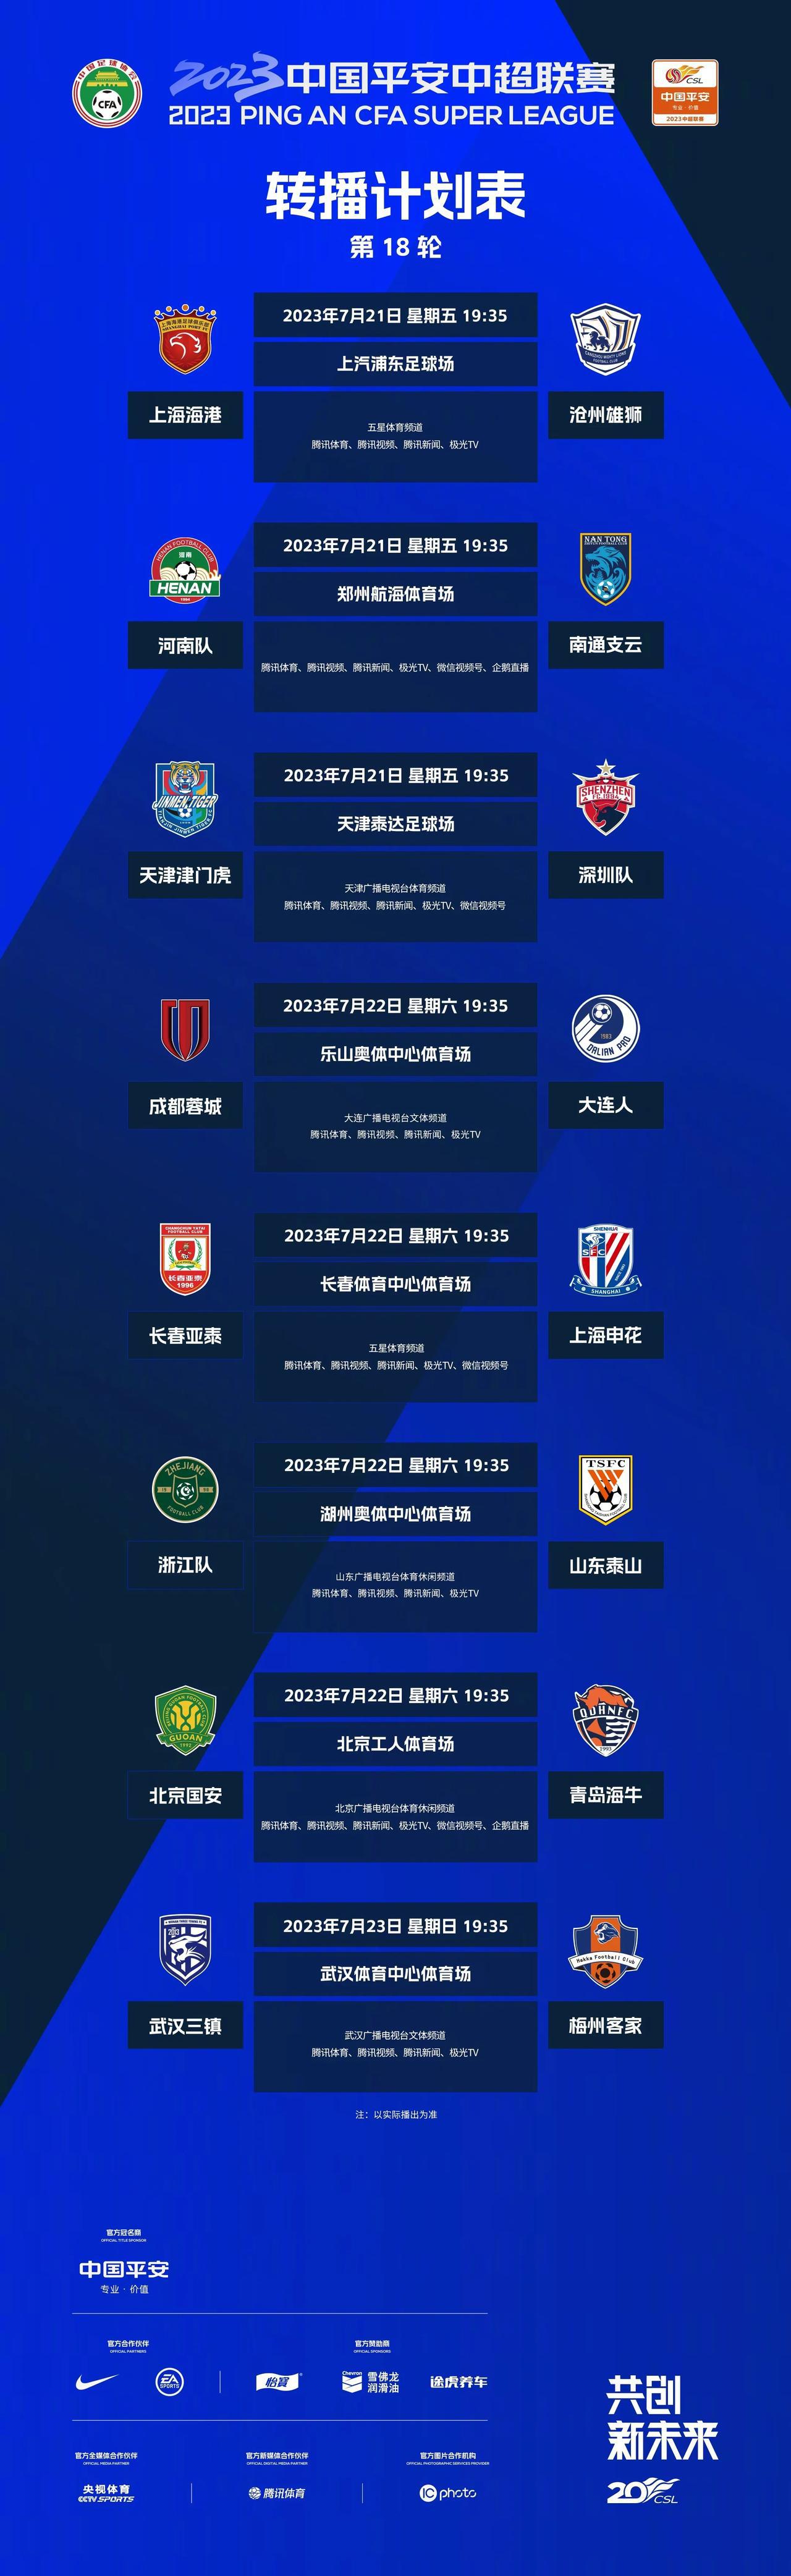 中超联赛官方今日公布第18轮裁判安排！转播计划表公布！

7月21日19点35分(2)